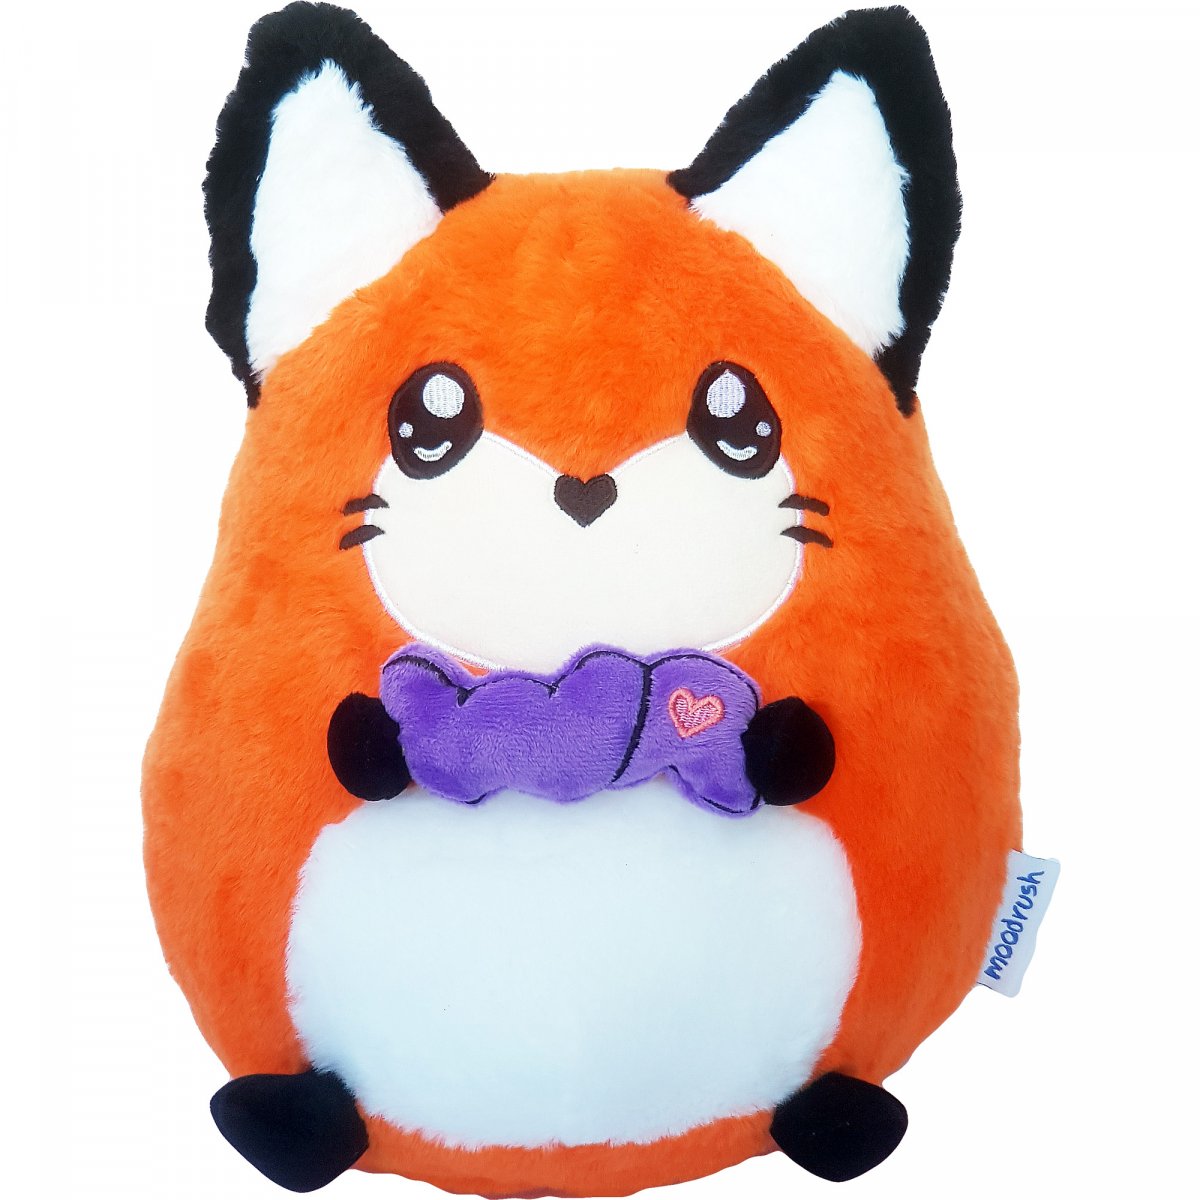 Furdis Orange Fox Plush Toy Pillow WA Fufu